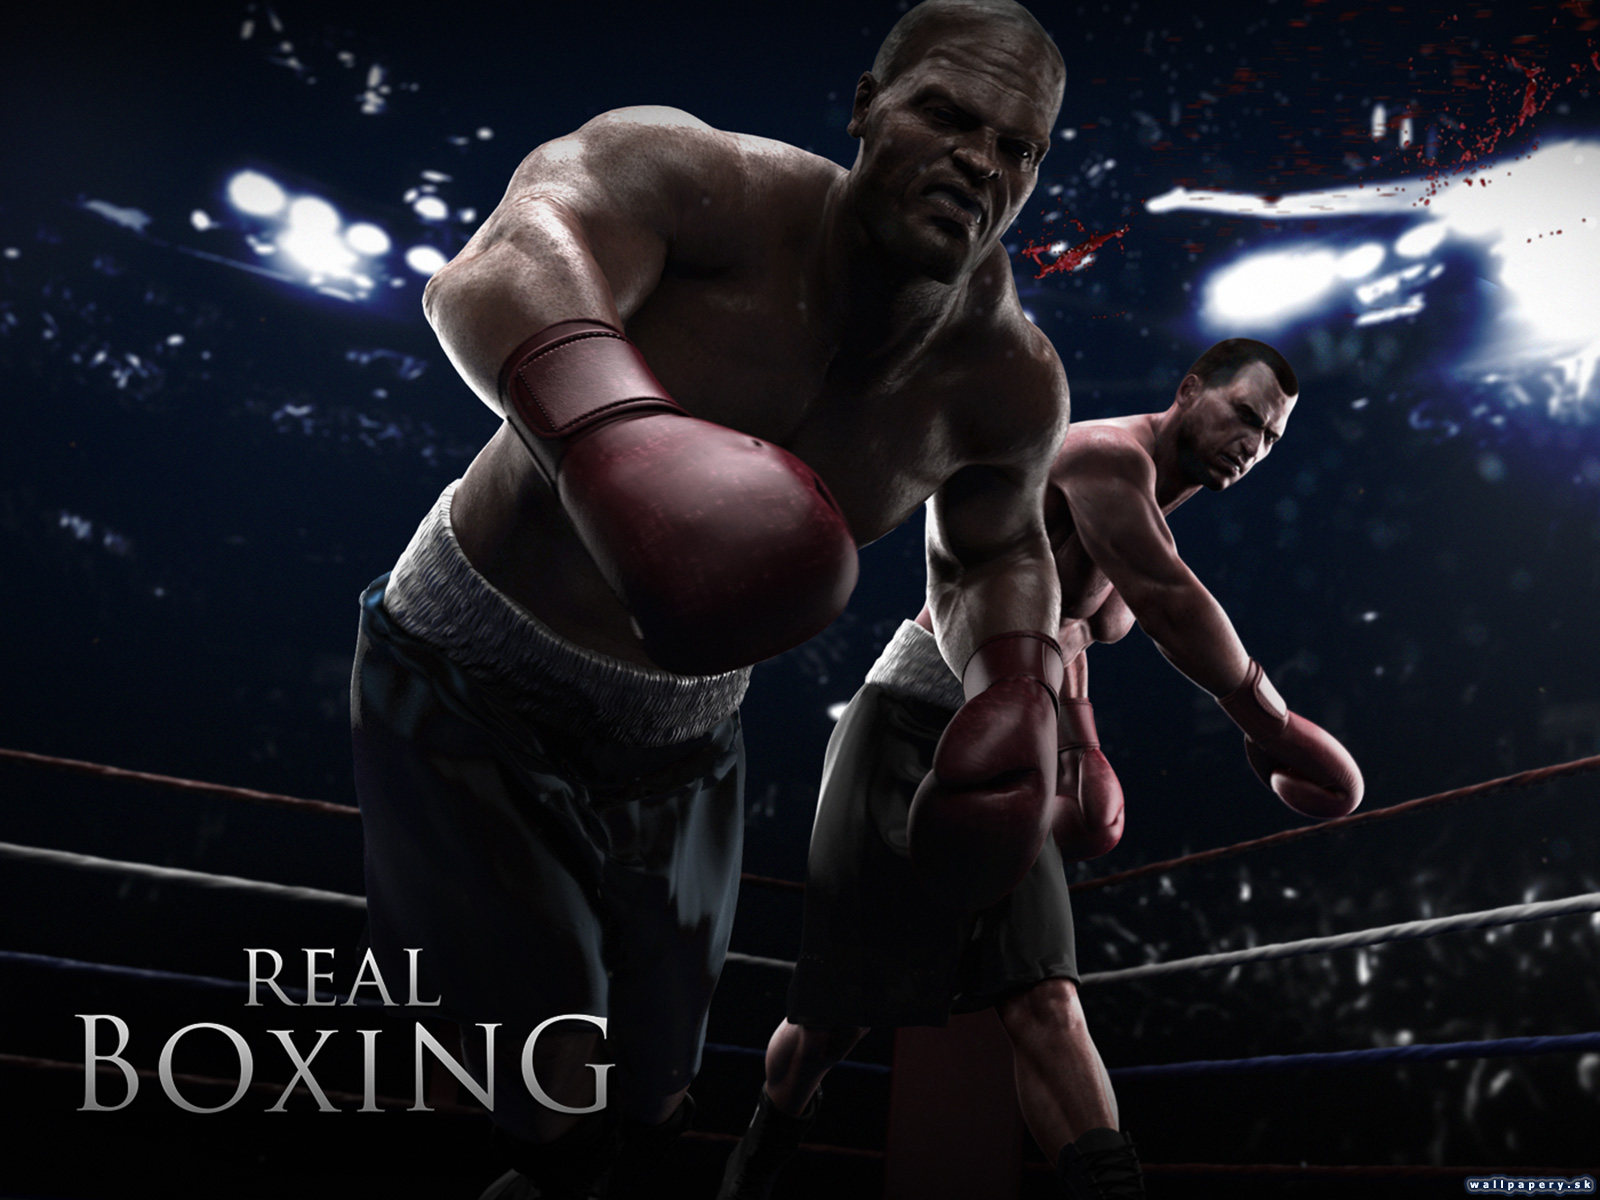 Real Boxing - wallpaper 1